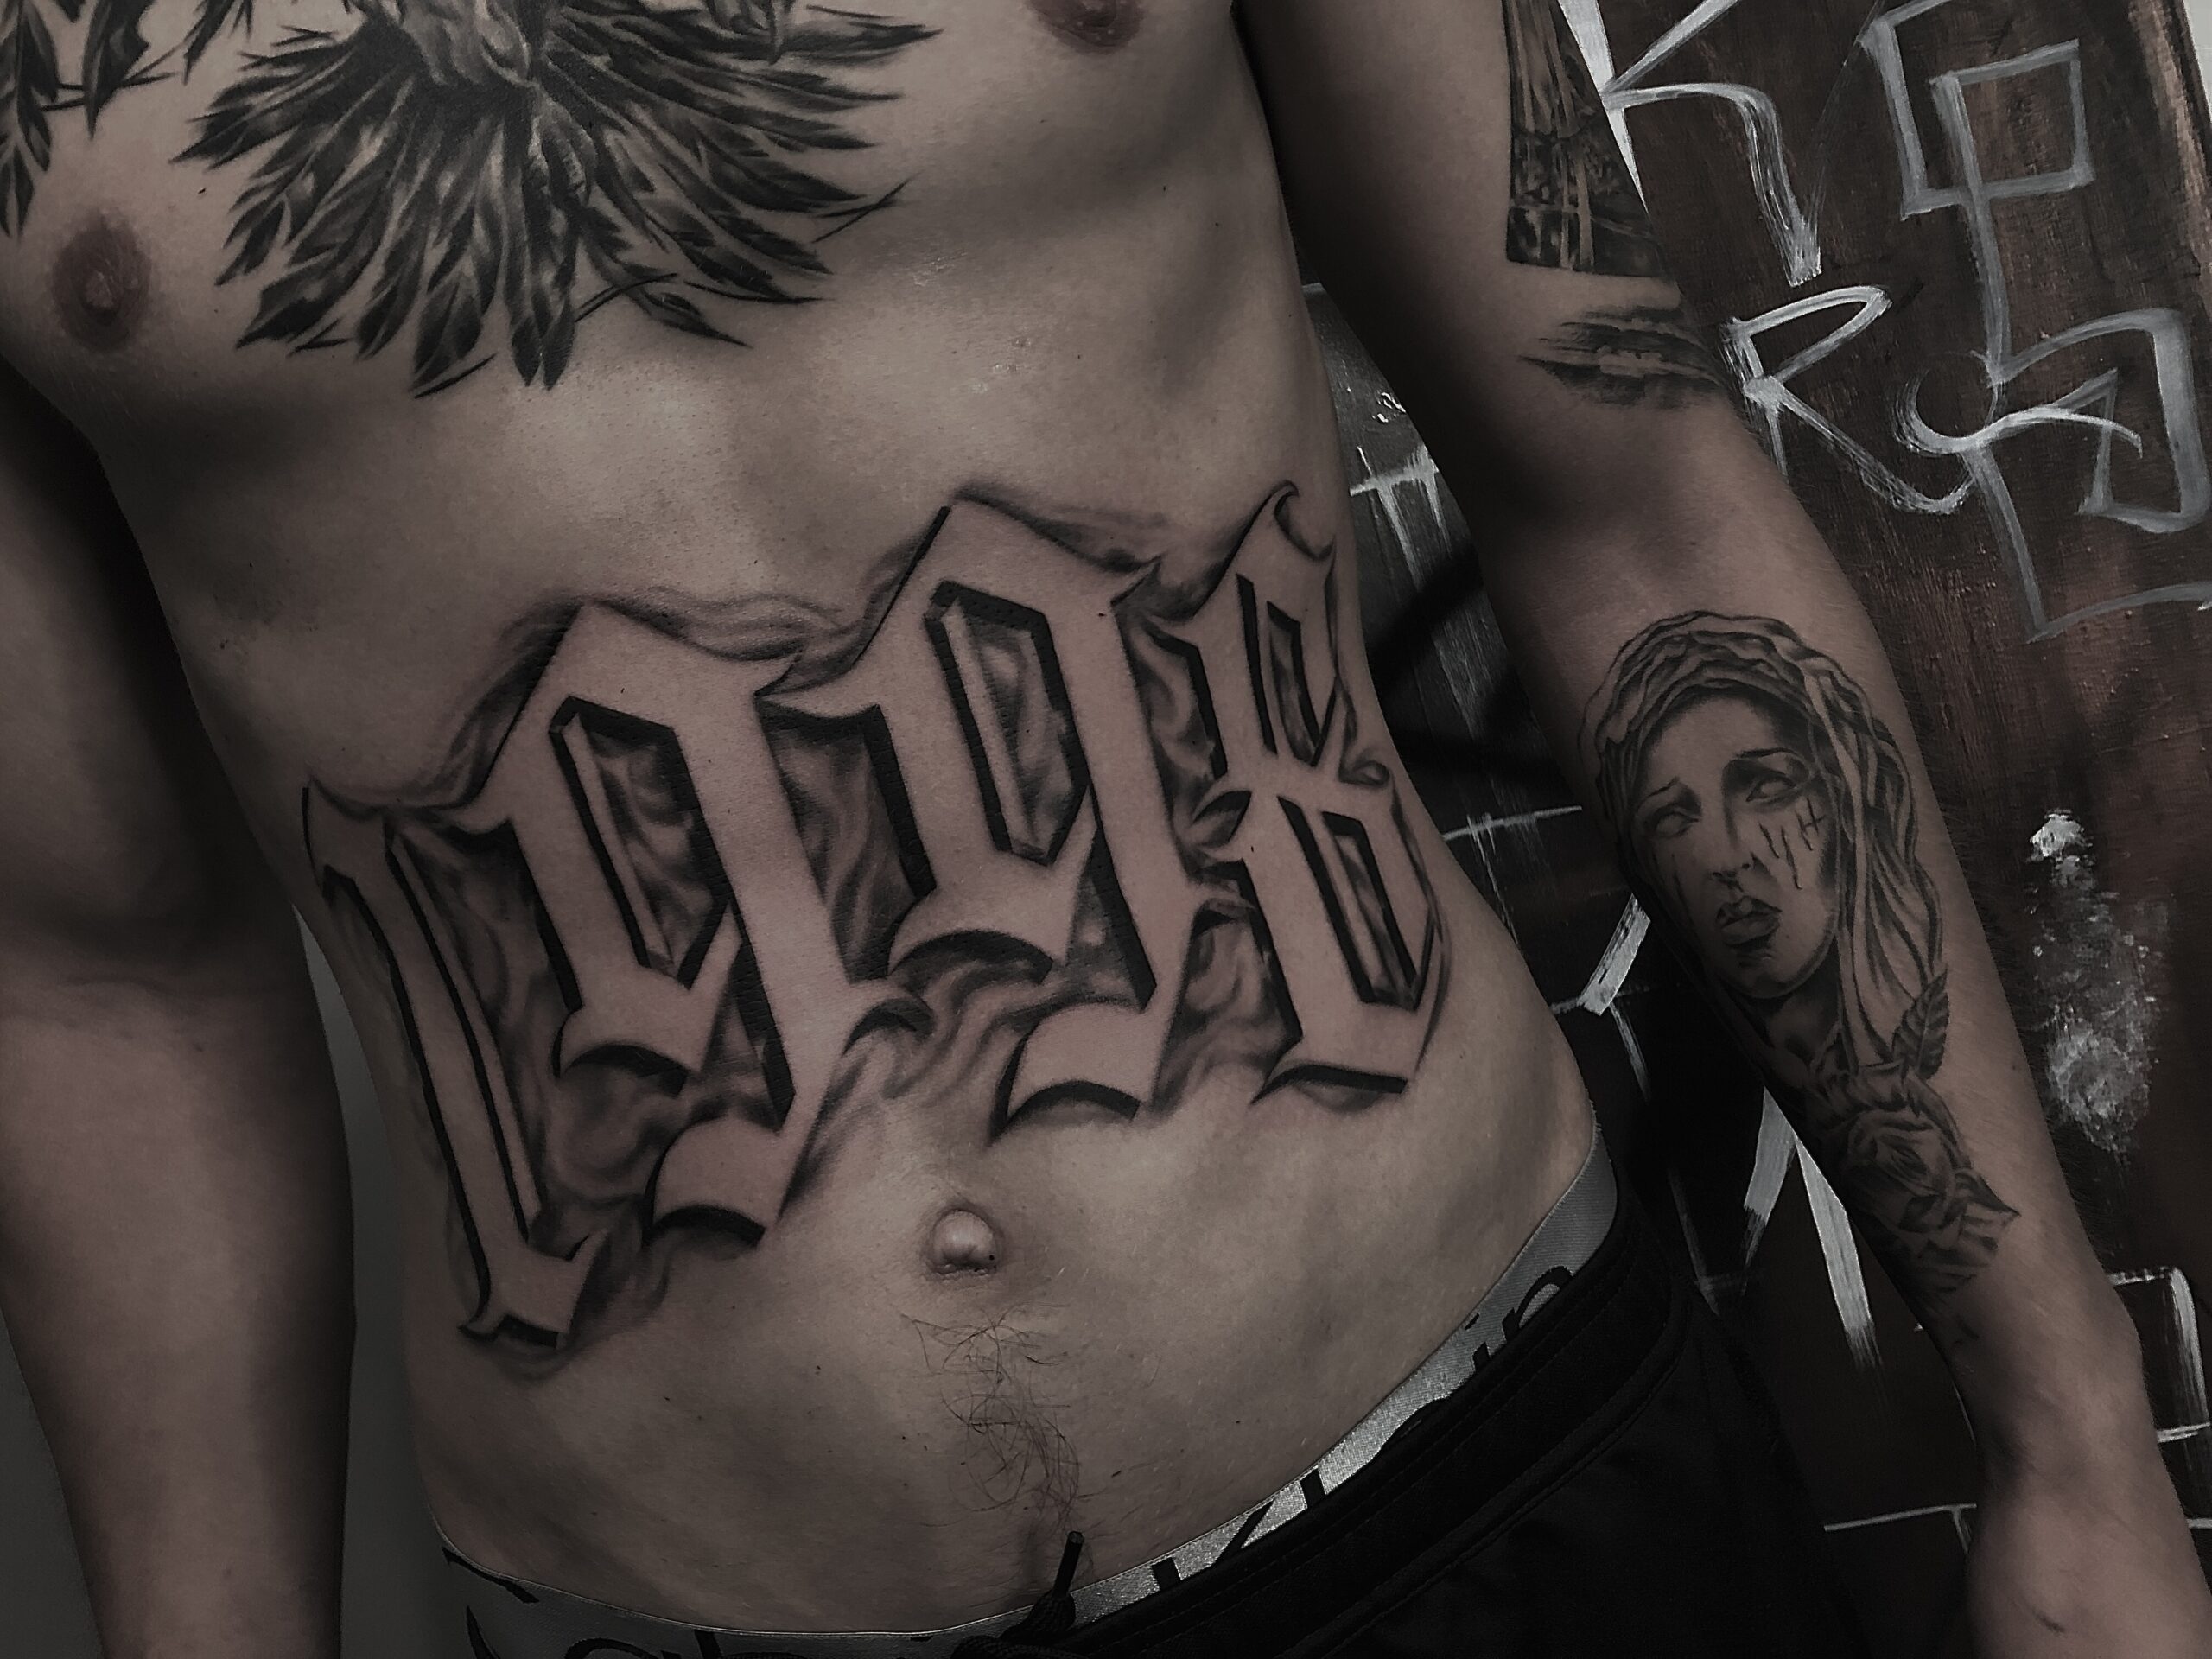 Wzory tatuażu we wrocławskim studio Guru Tattoo